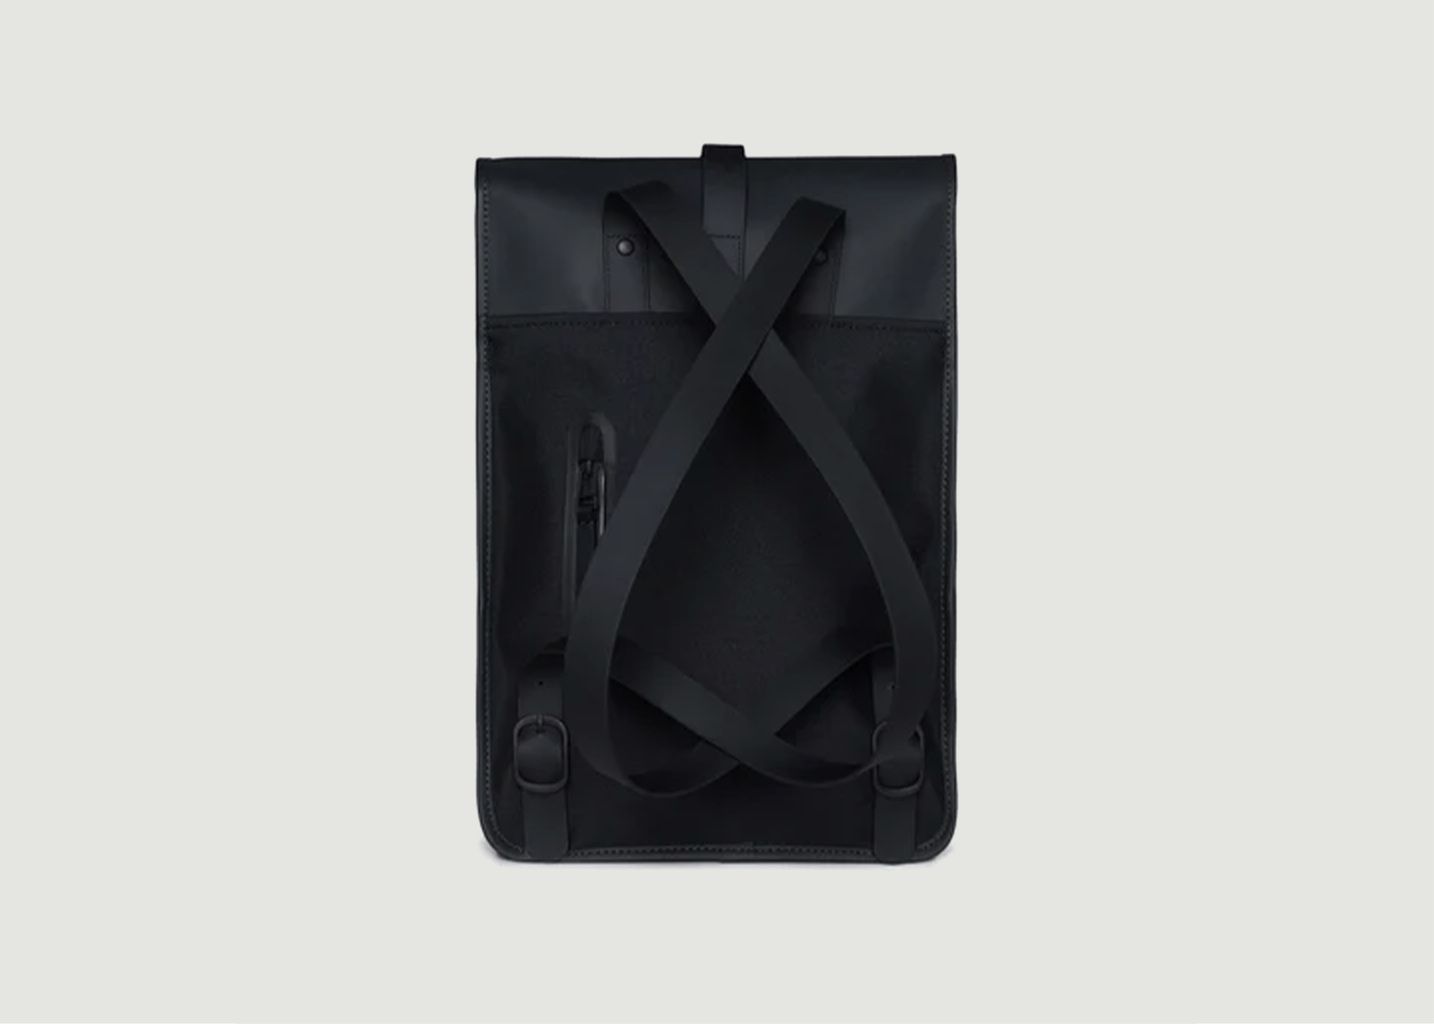 Mini backpack in coated canvas  - Rains